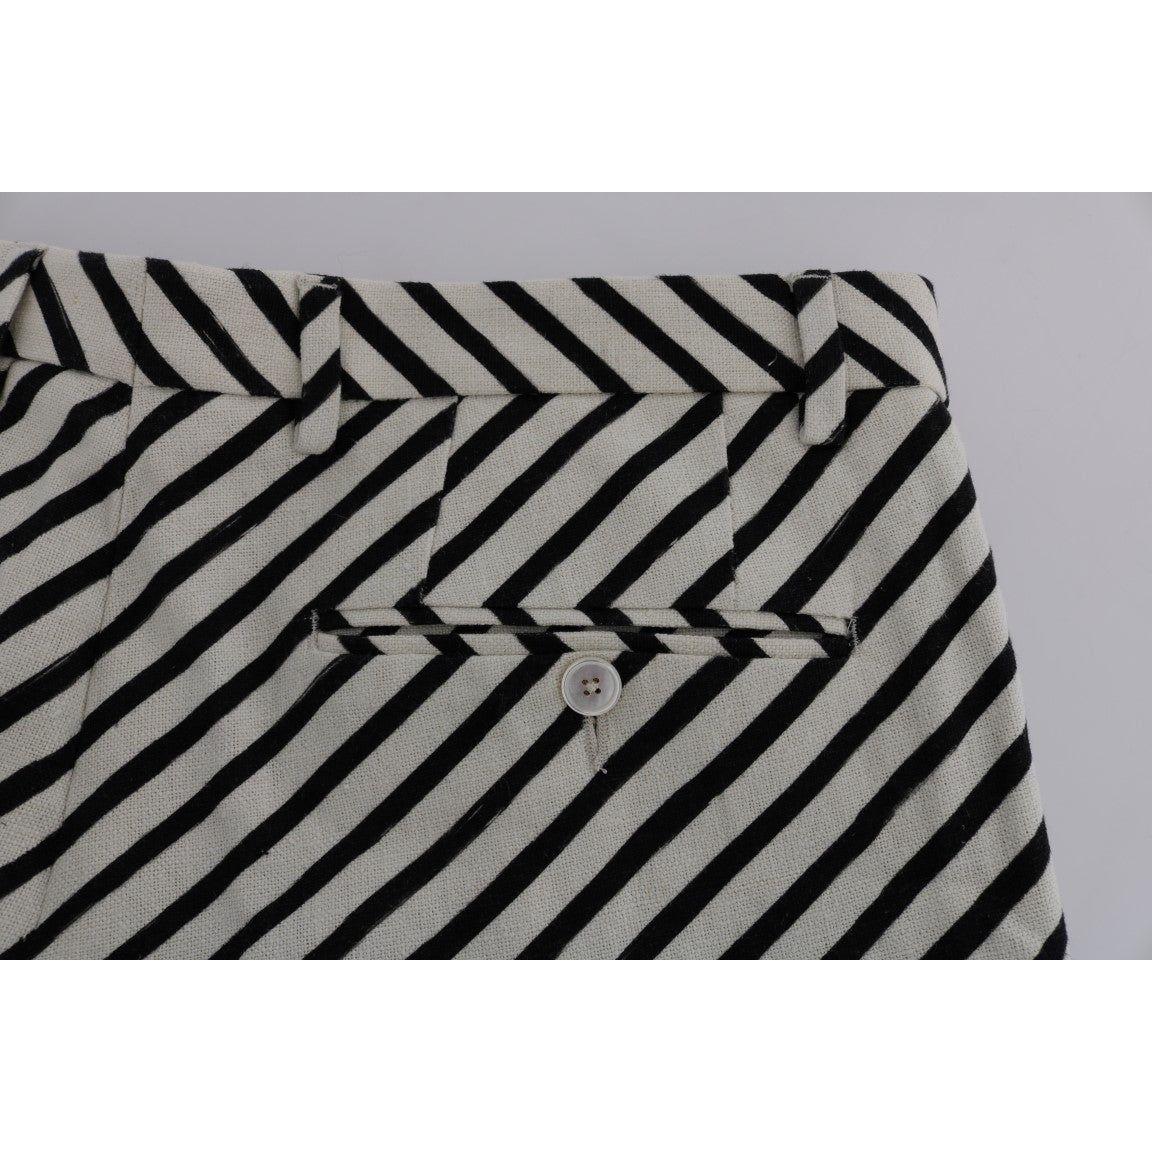 Dolce & Gabbana Striped Hemp Casual Shorts white-black-striped-hemp-casual-shorts 443695-white-black-striped-hemp-casual-shorts-4.jpg